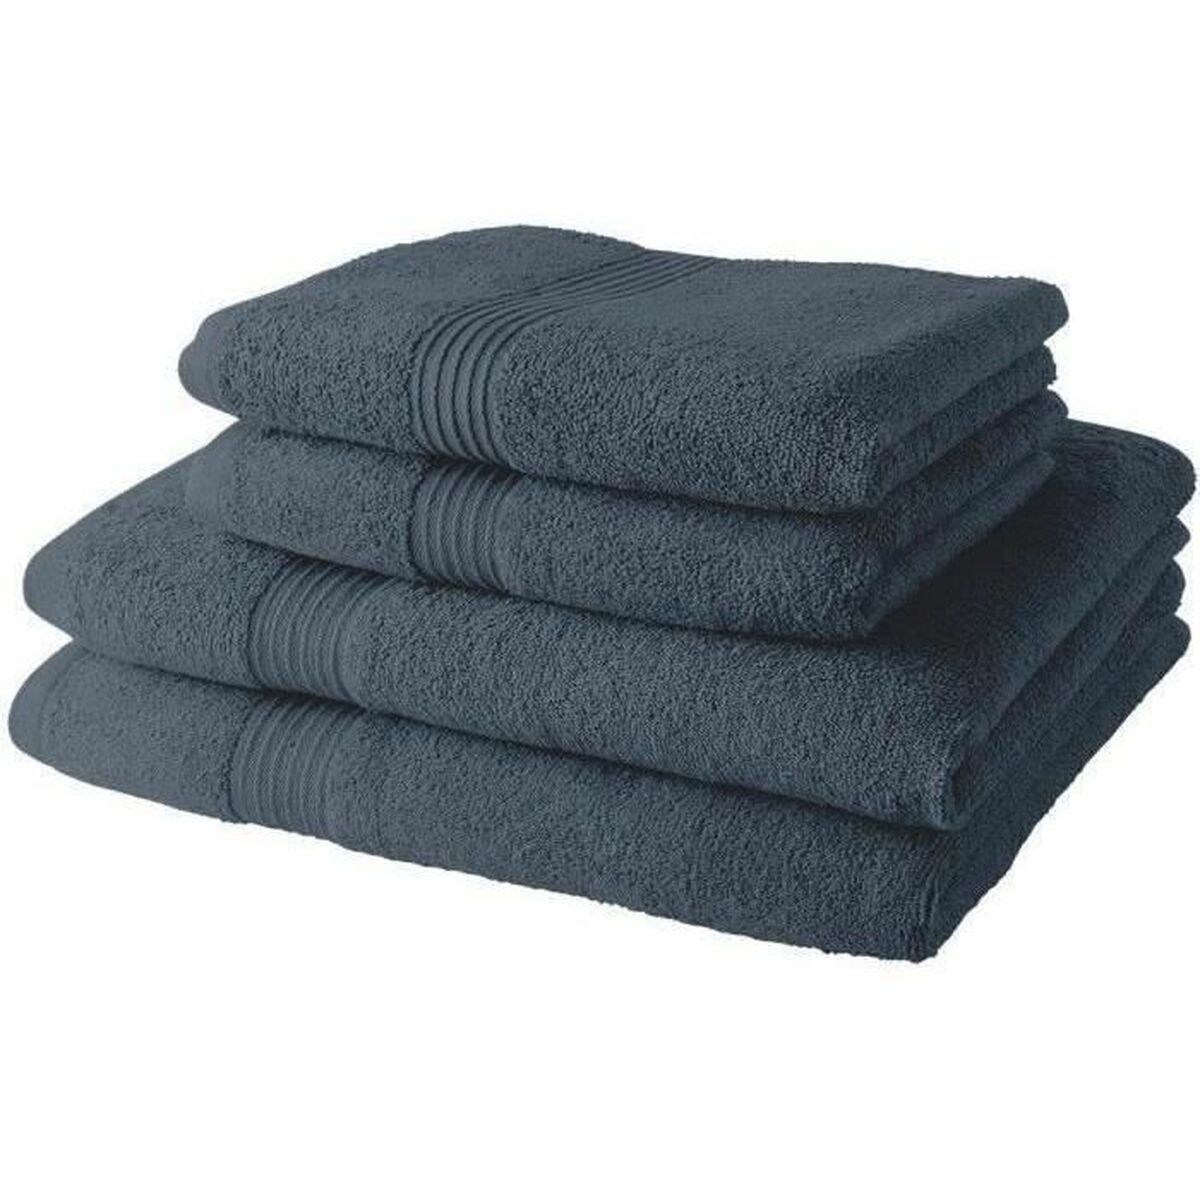 Towel set TODAY Grey 4 Pieces